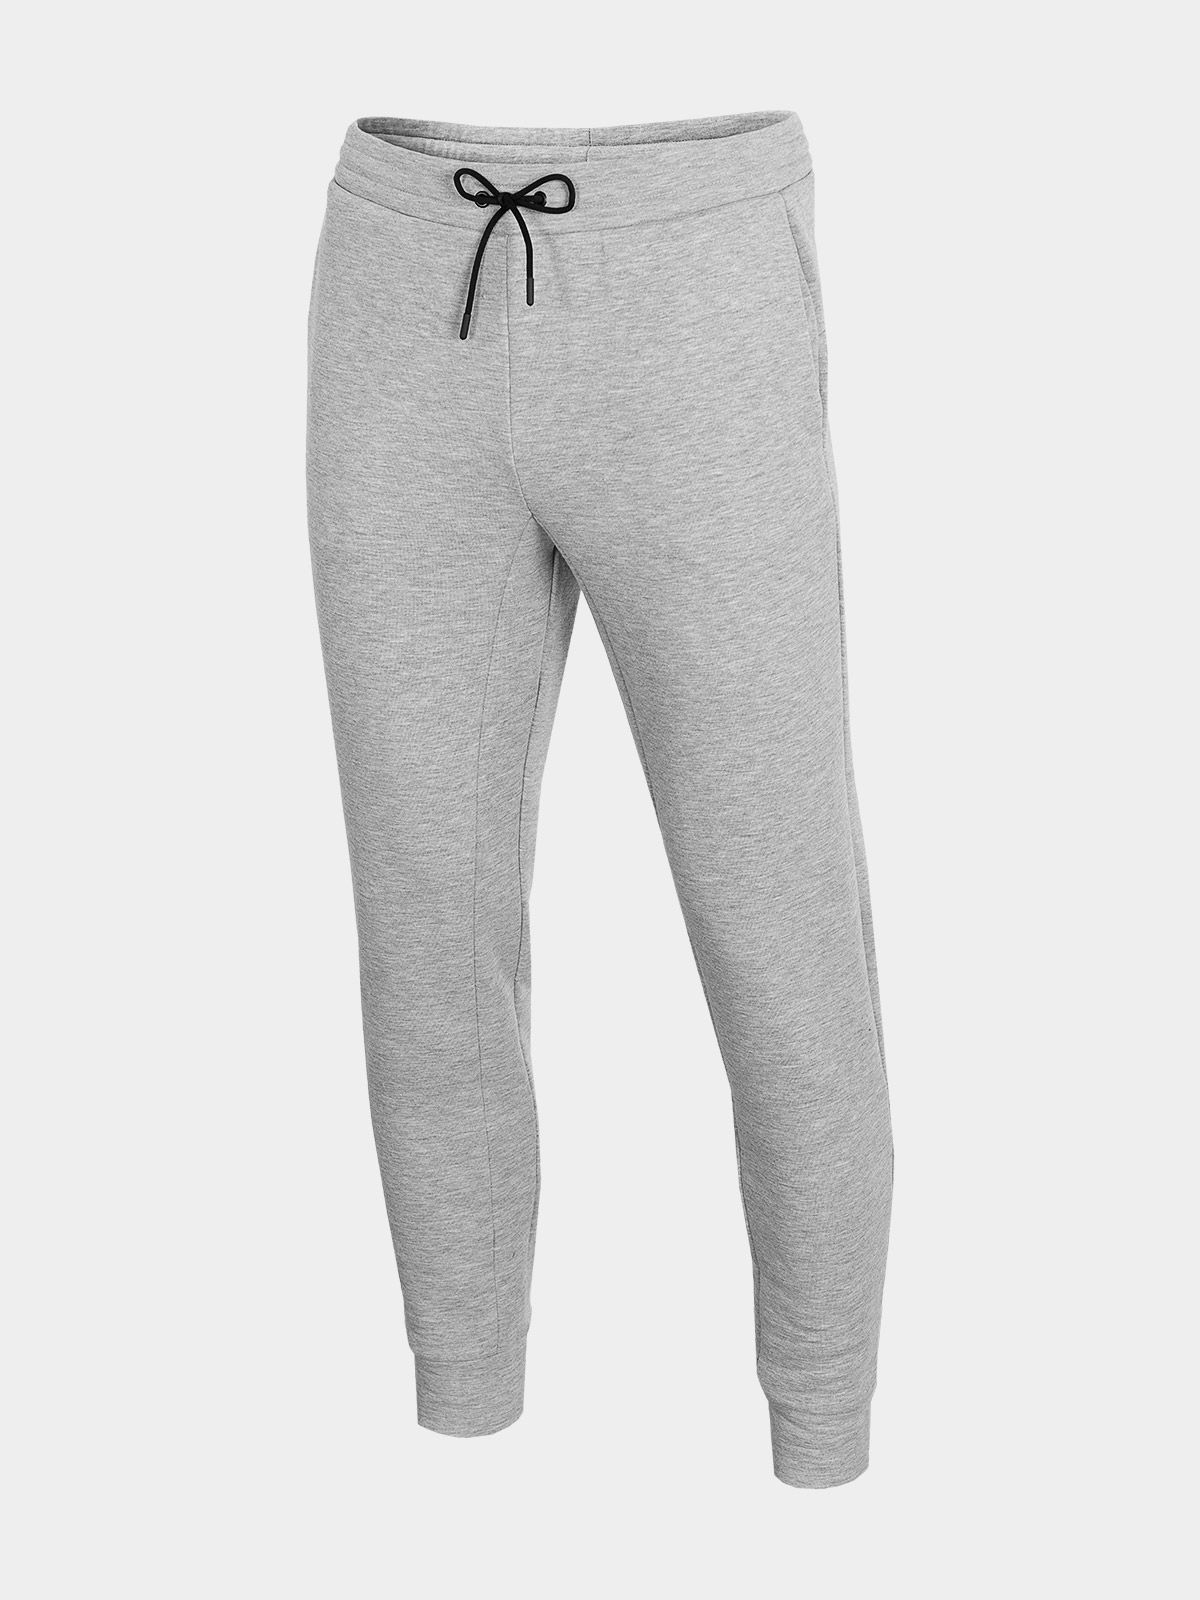 фото Спортивные брюки мужские outhorn hol21-spmd604-26m серые s